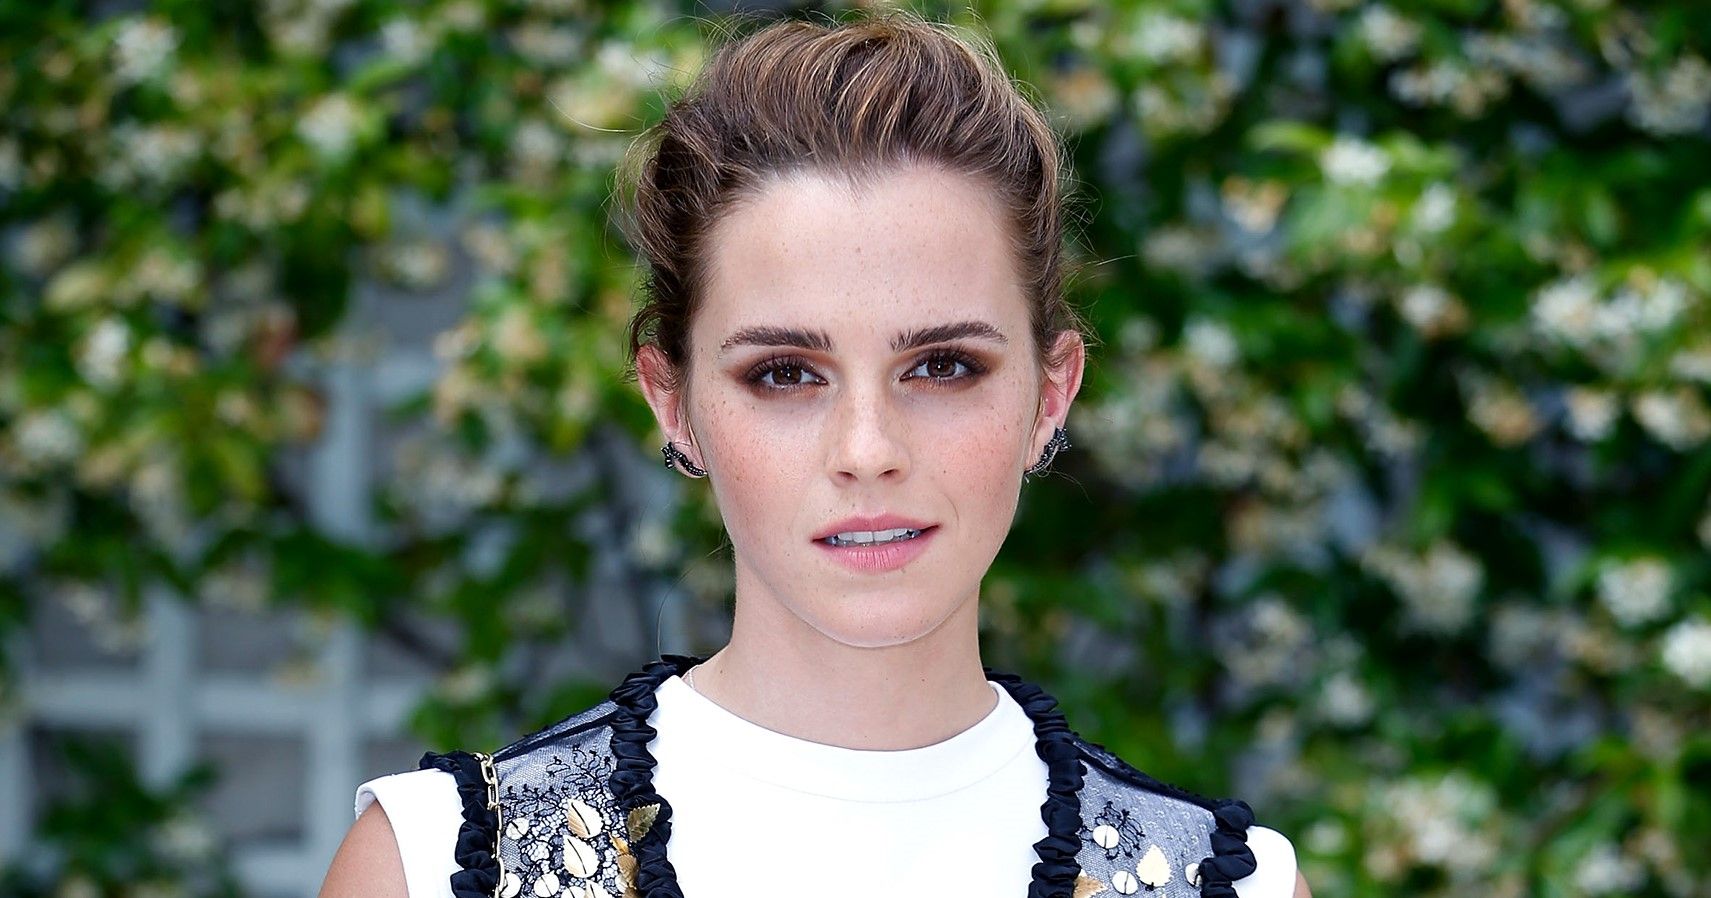 Kering, proprietária da Gucci, tem um novo diretor: Emma Watson